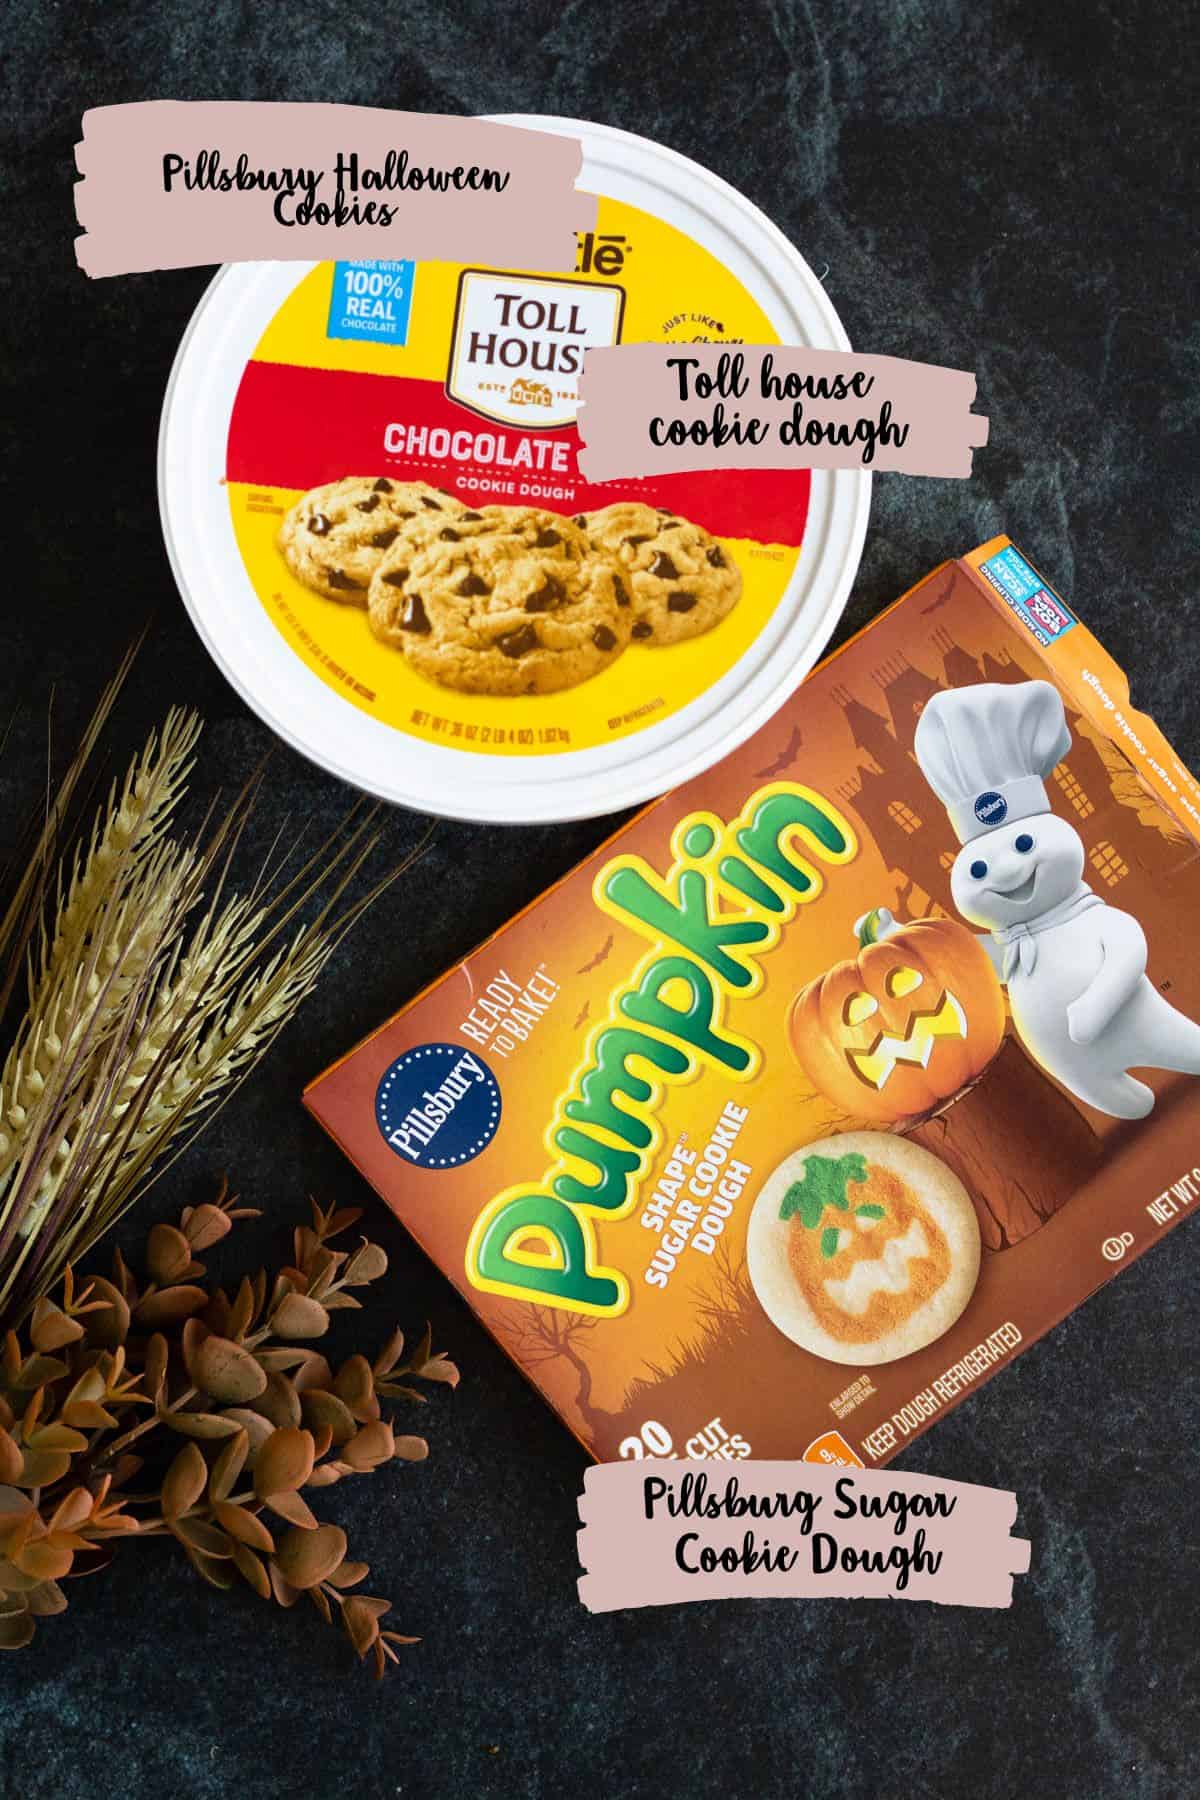 Ingredients shown needed to prepare pillsbury halloween cookies.